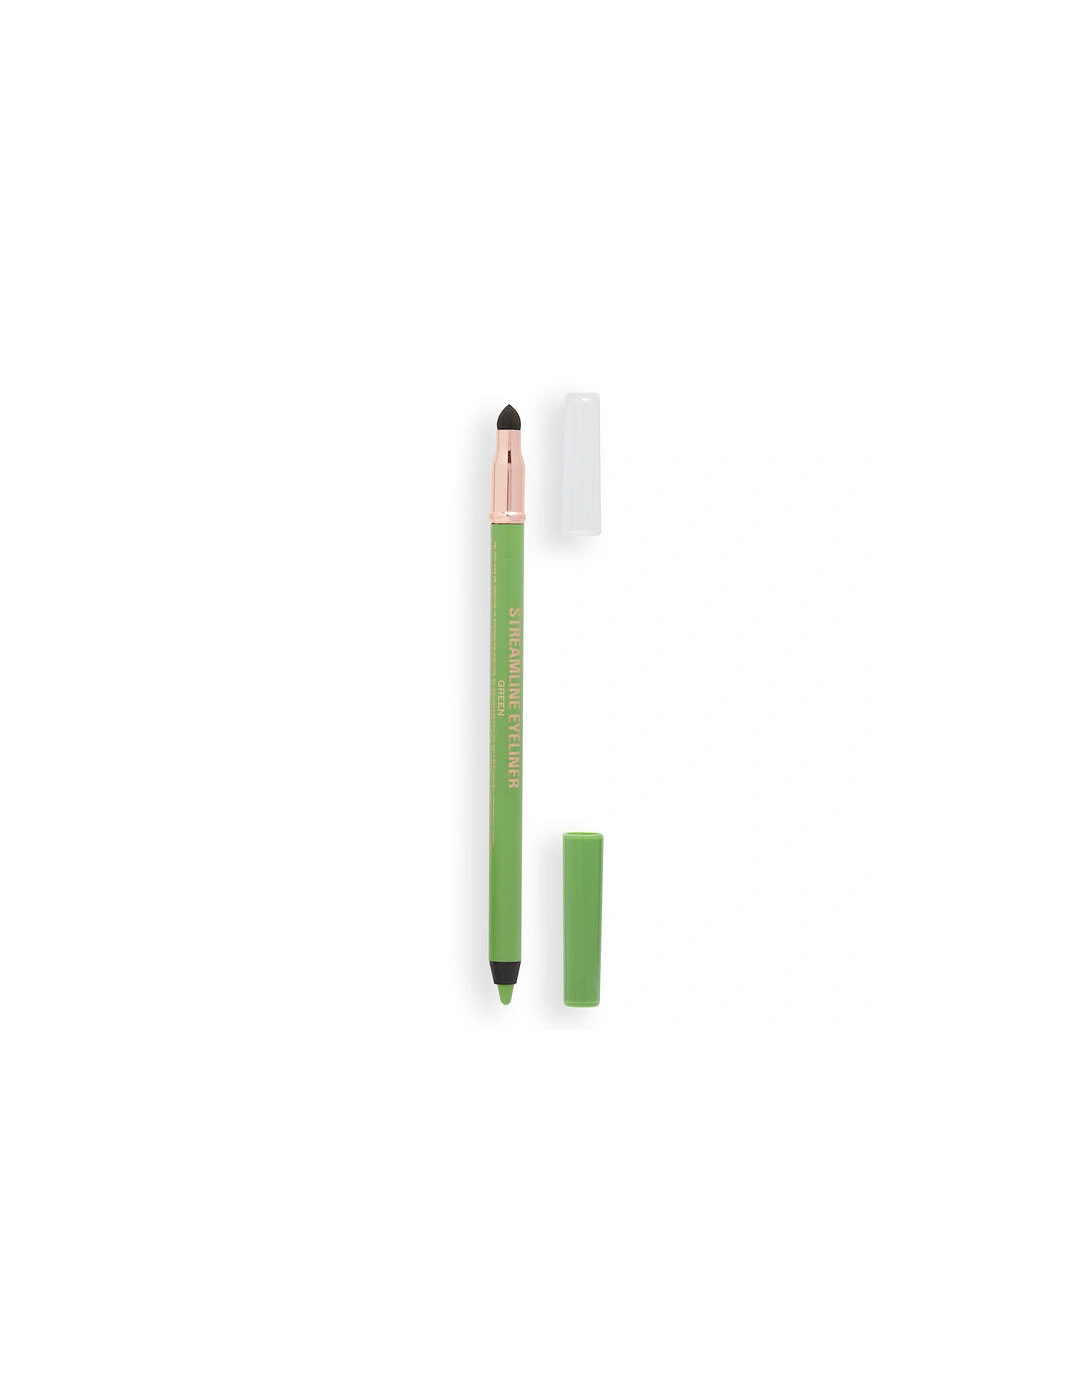 Makeup Streamline Waterline Eyeliner Pencil Green, 2 of 1